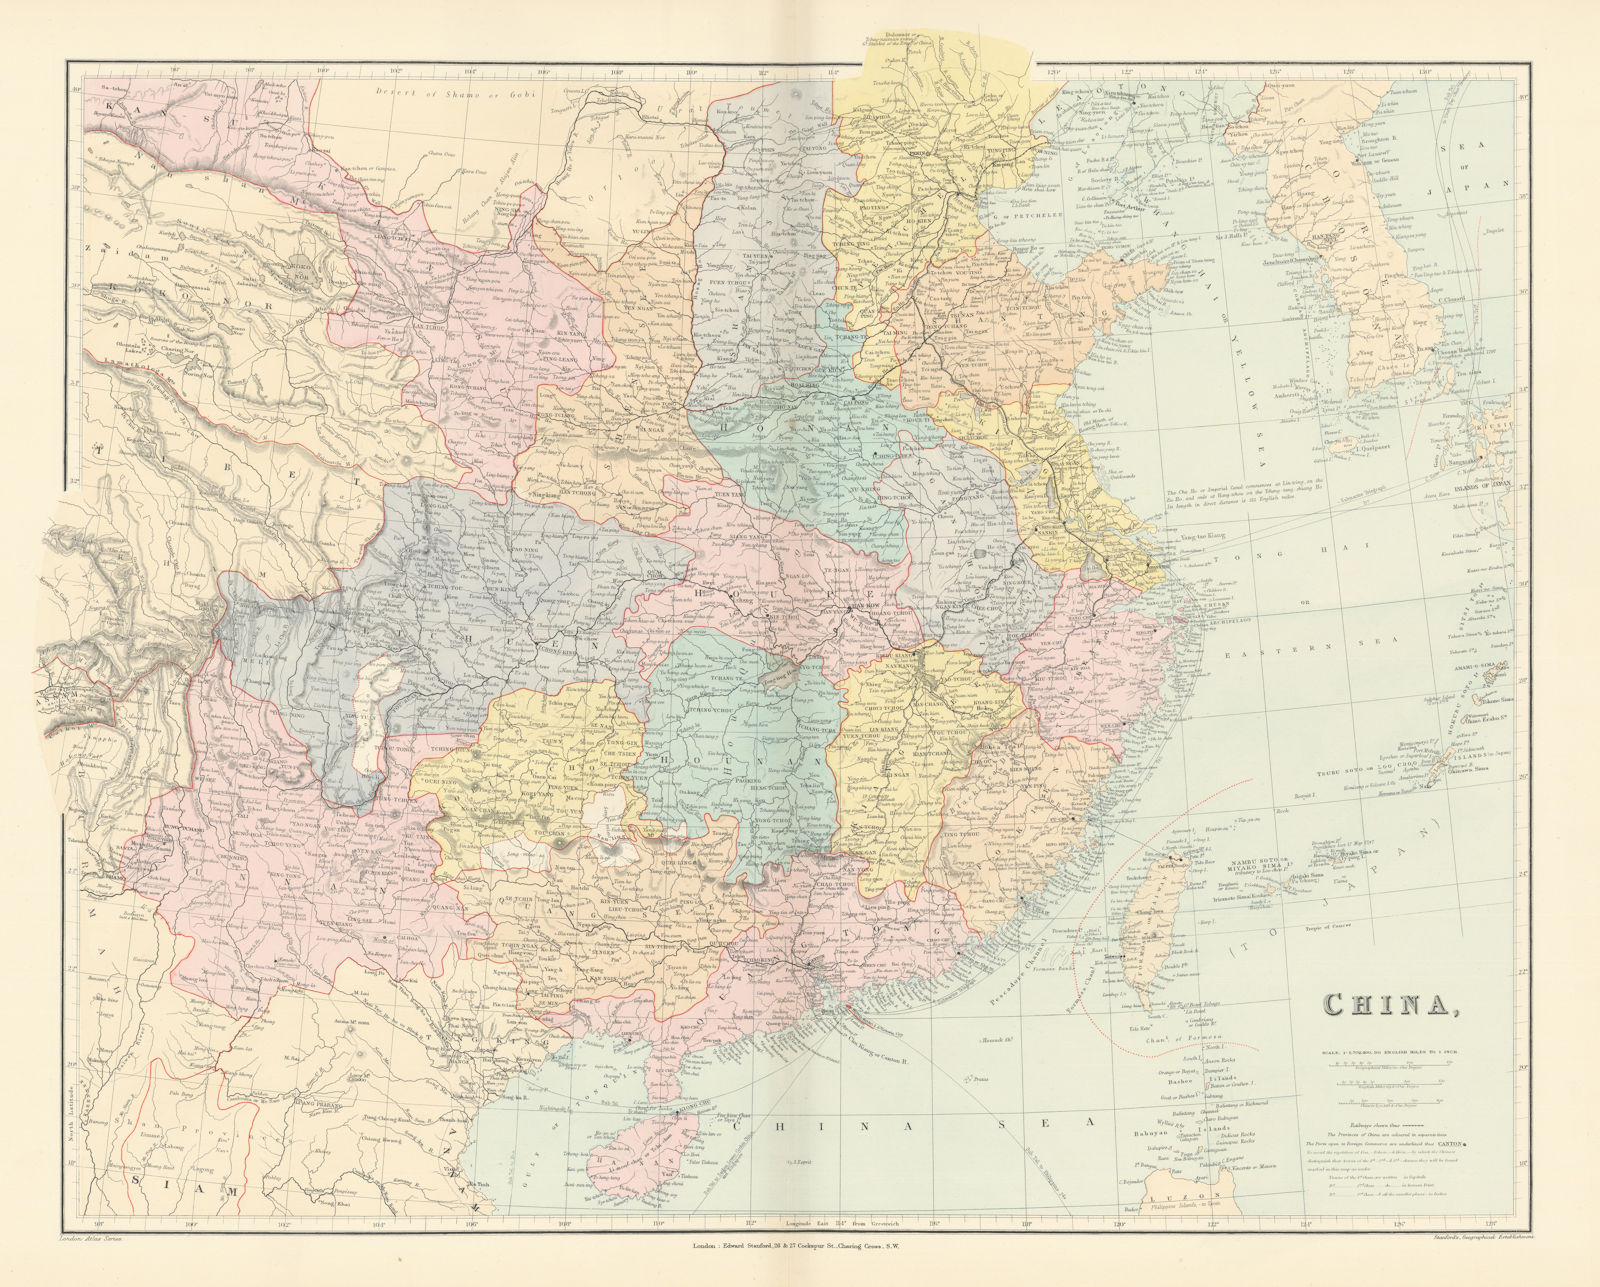 China. Hong Kong. Kwang-chao. Kiao-chai. Wei-hai-wei. 52x65cm. STANFORD 1896 map